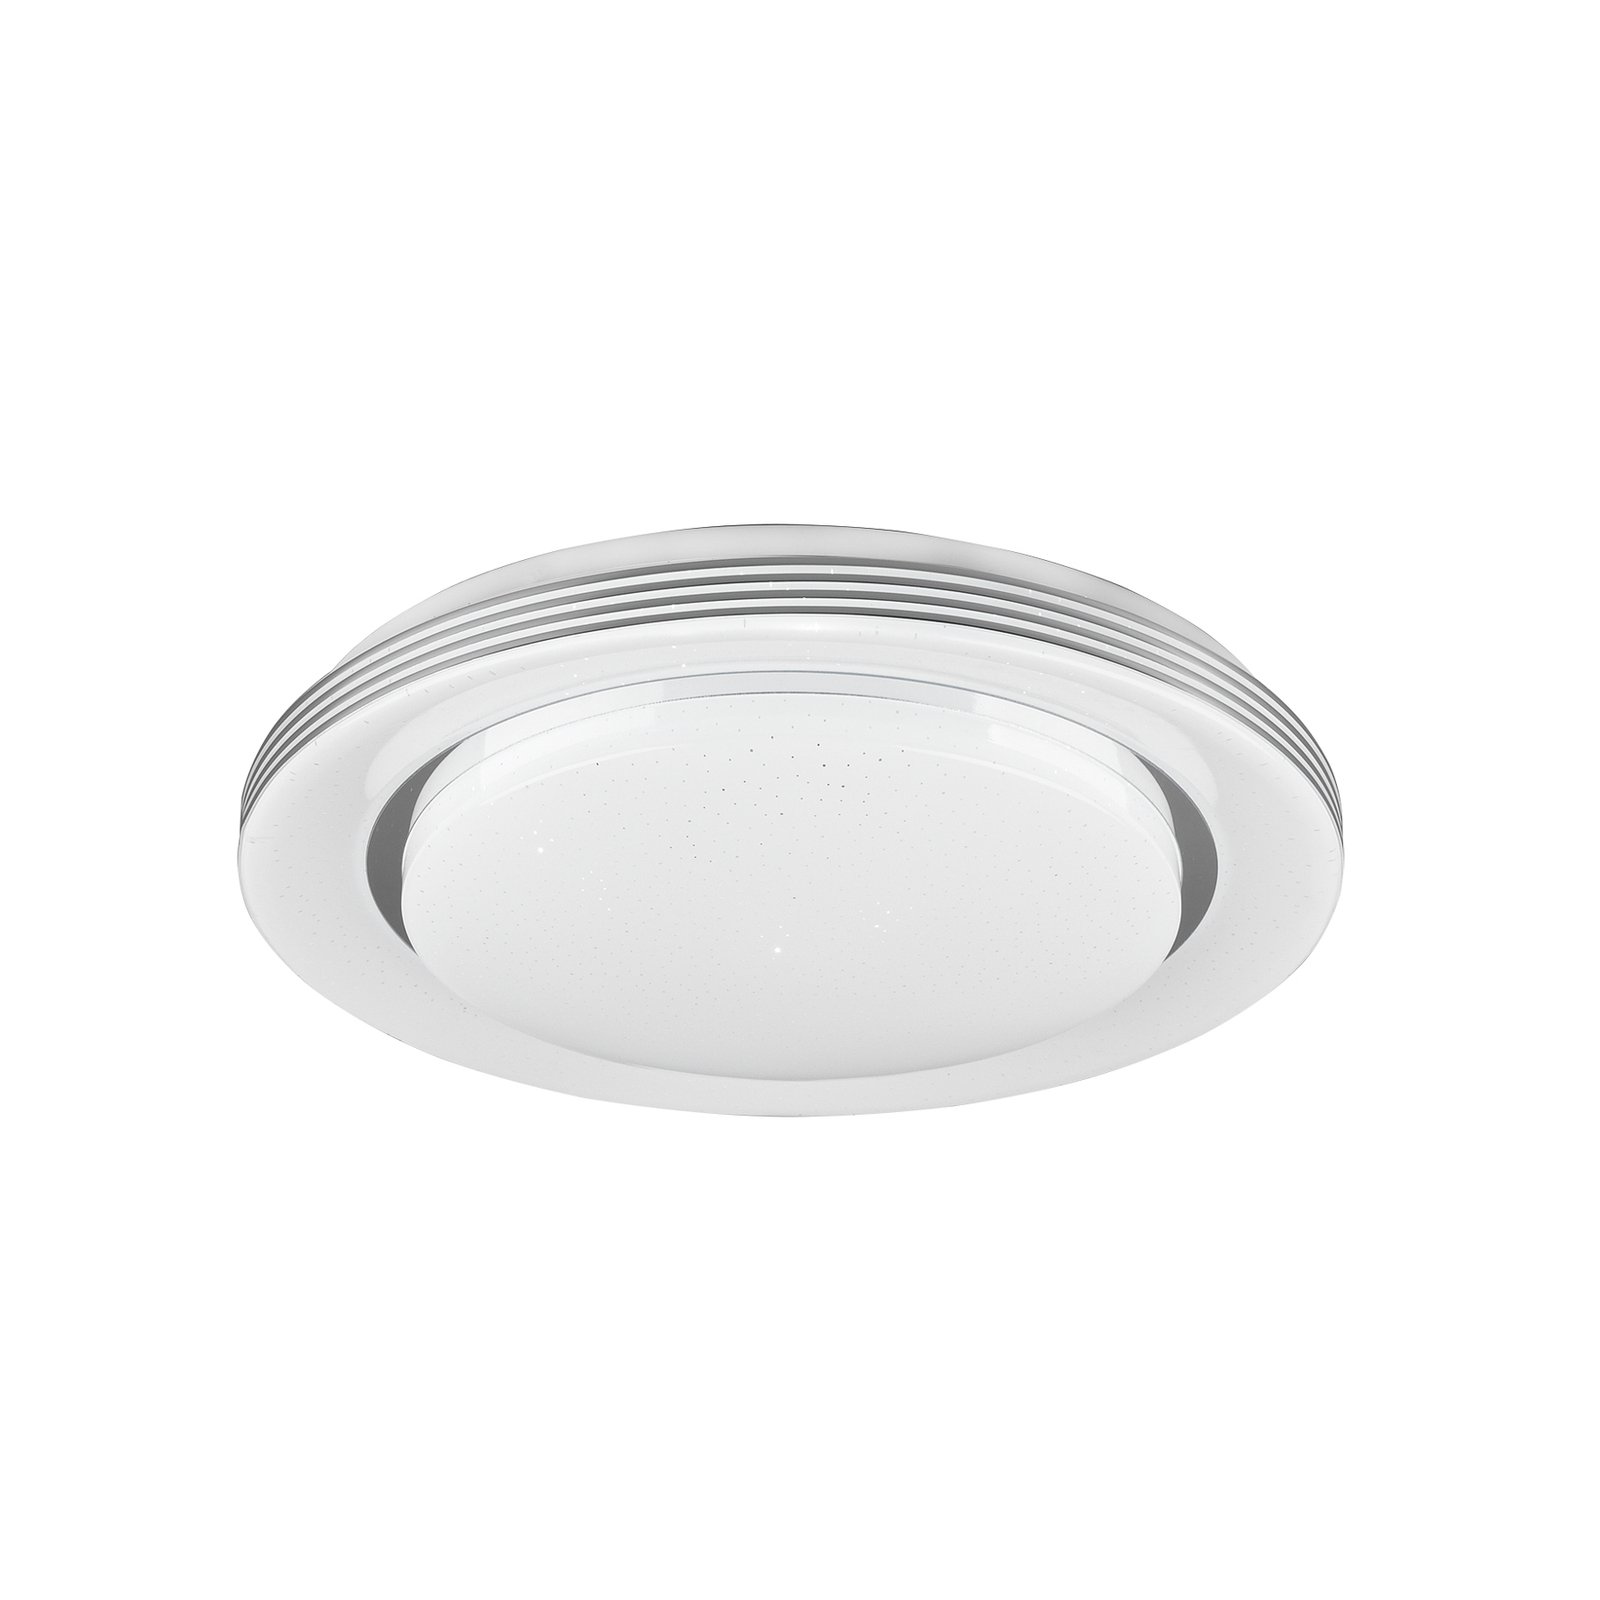 LED ceiling lamp Atria, Ø 38 cm, white, plastic, CCT